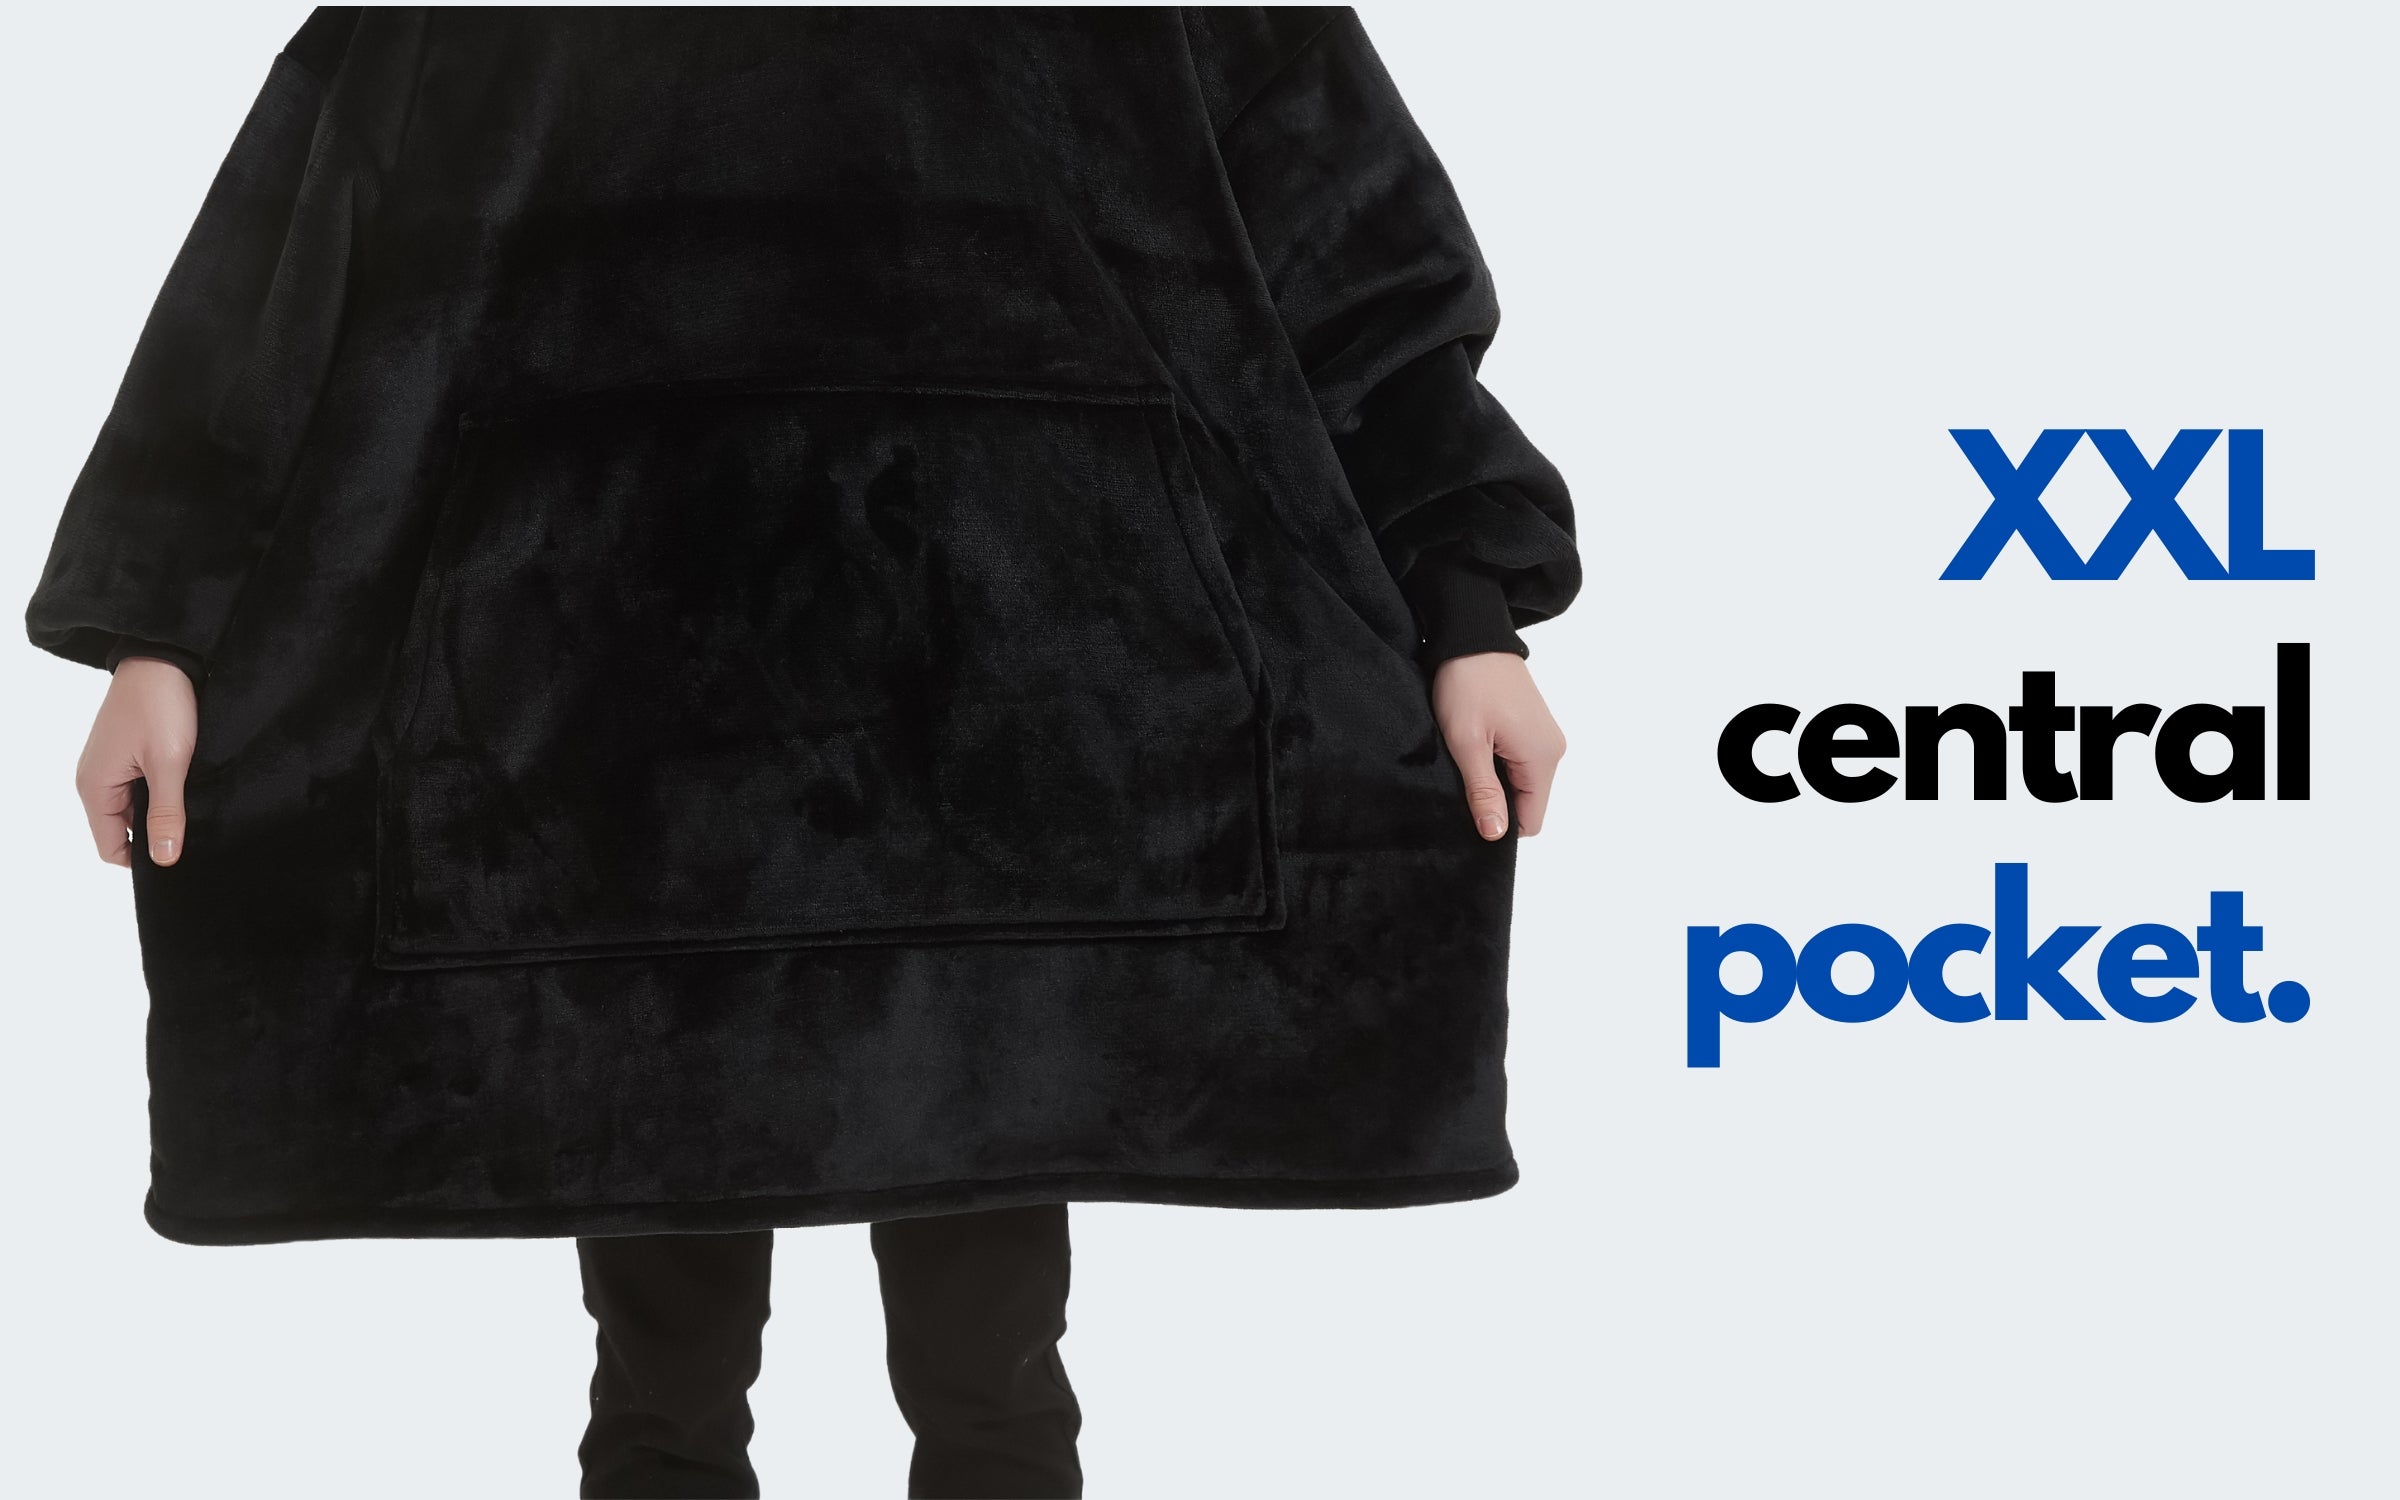 XXL central pocket black men's hoodie blanket wearable hooded blanket The Oversized Hoodie